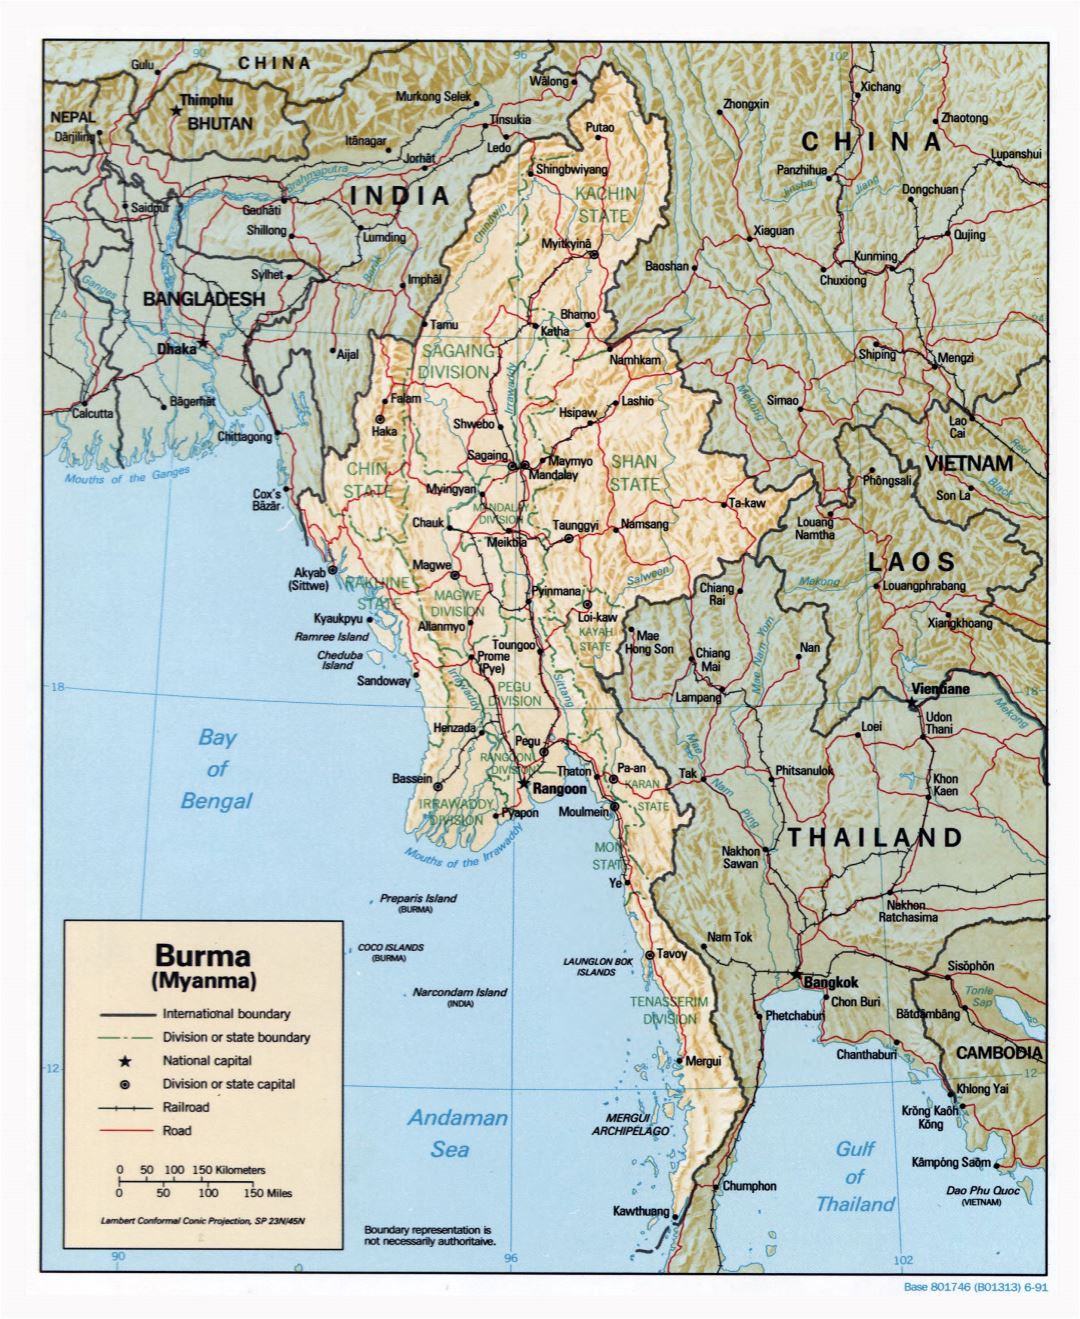 Grande detallado mapa político y administrativo de Birmania (Myanmar) con socorro, carreteras, ferrocarriles y principales ciudades - 1991